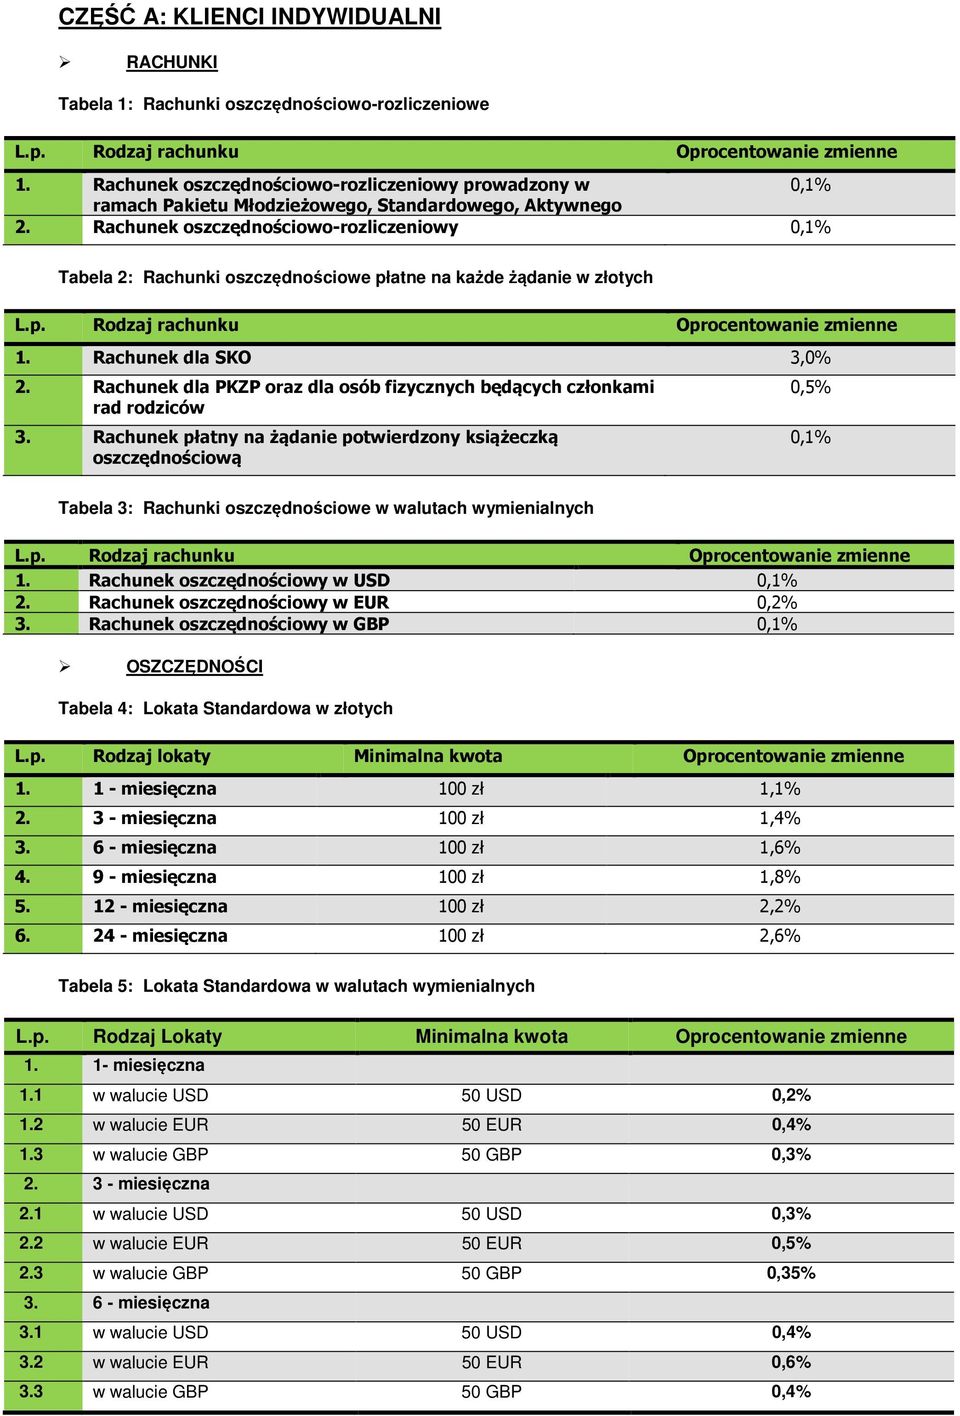 Rachunek oszczędnościowo-rozliczeniowy 0,1% Tabela 2: Rachunki oszczędnościowe płatne na każde żądanie w złotych 1. Rachunek dla SKO 3,0% 2.